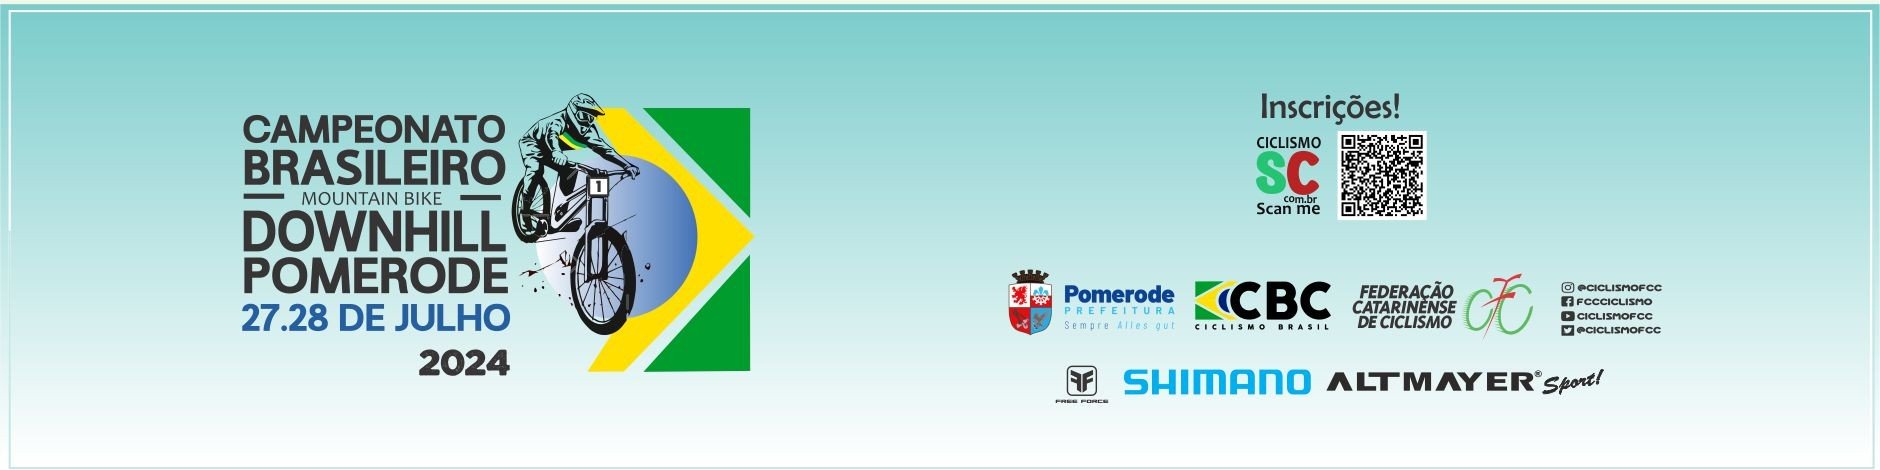 Campeonato Brasileiro de Down Hill Pomerode 2024